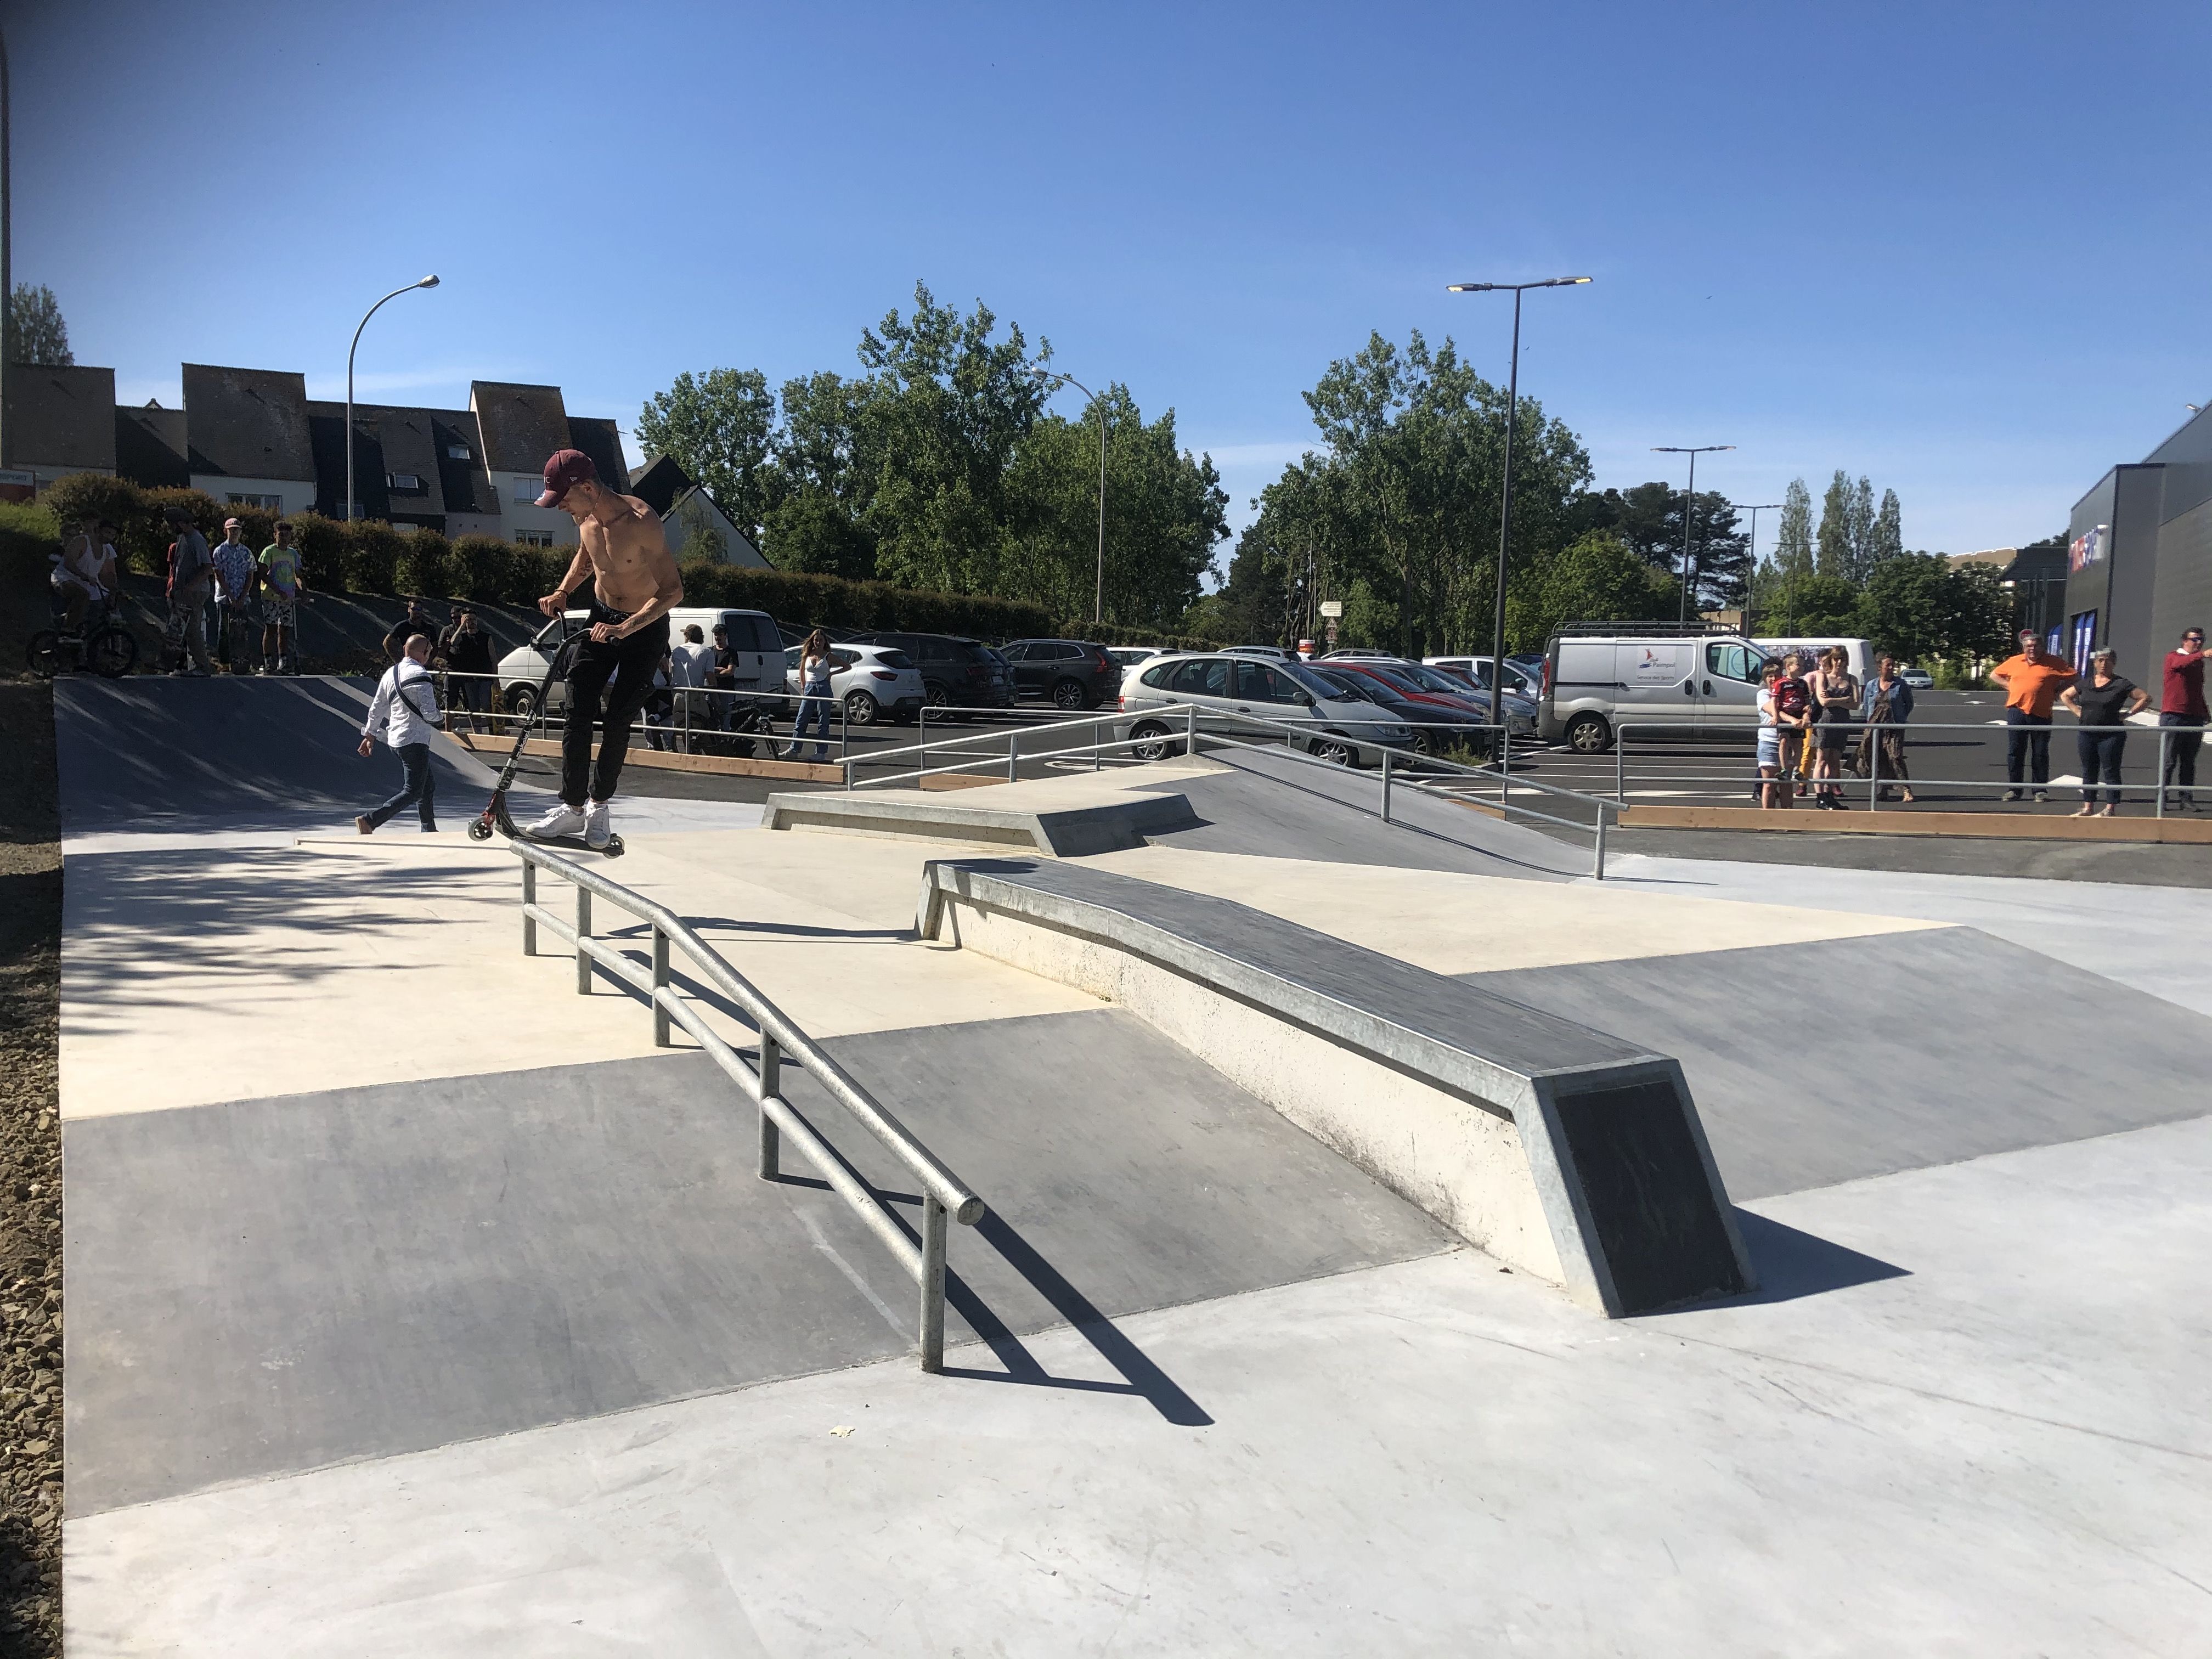 skate park à paimpol par novello BTP